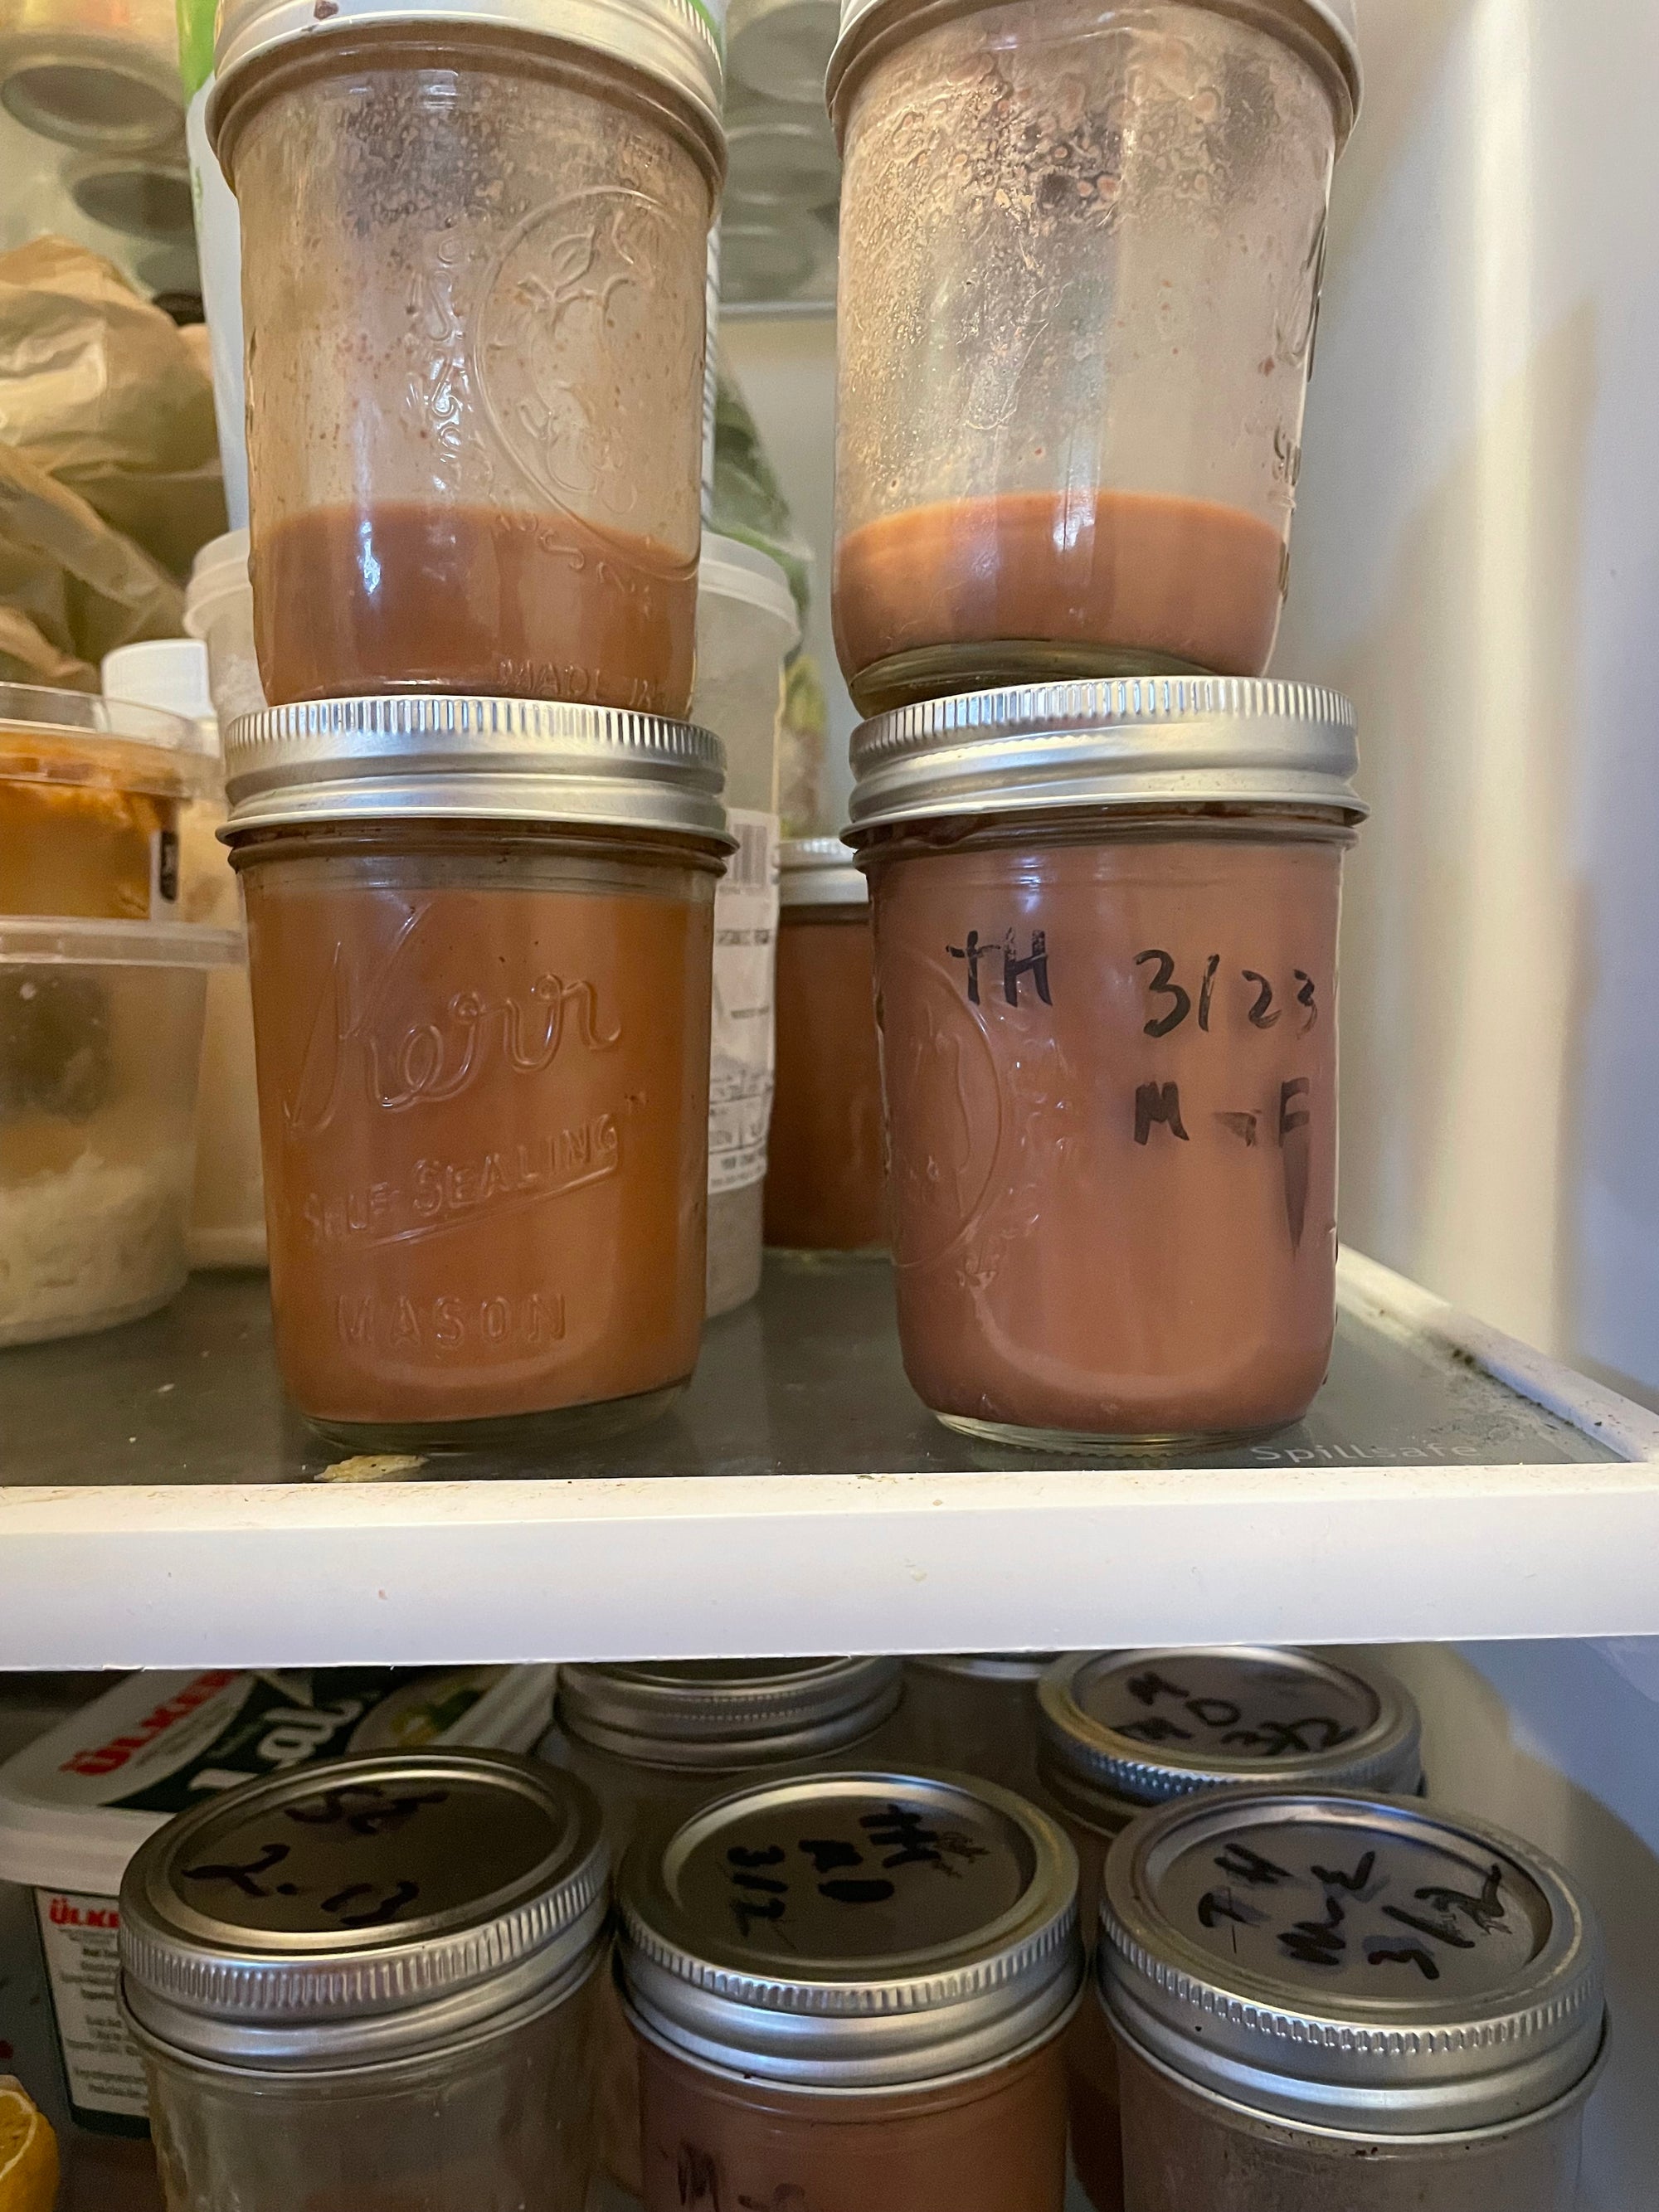 Samples of pecan milk in a fridge